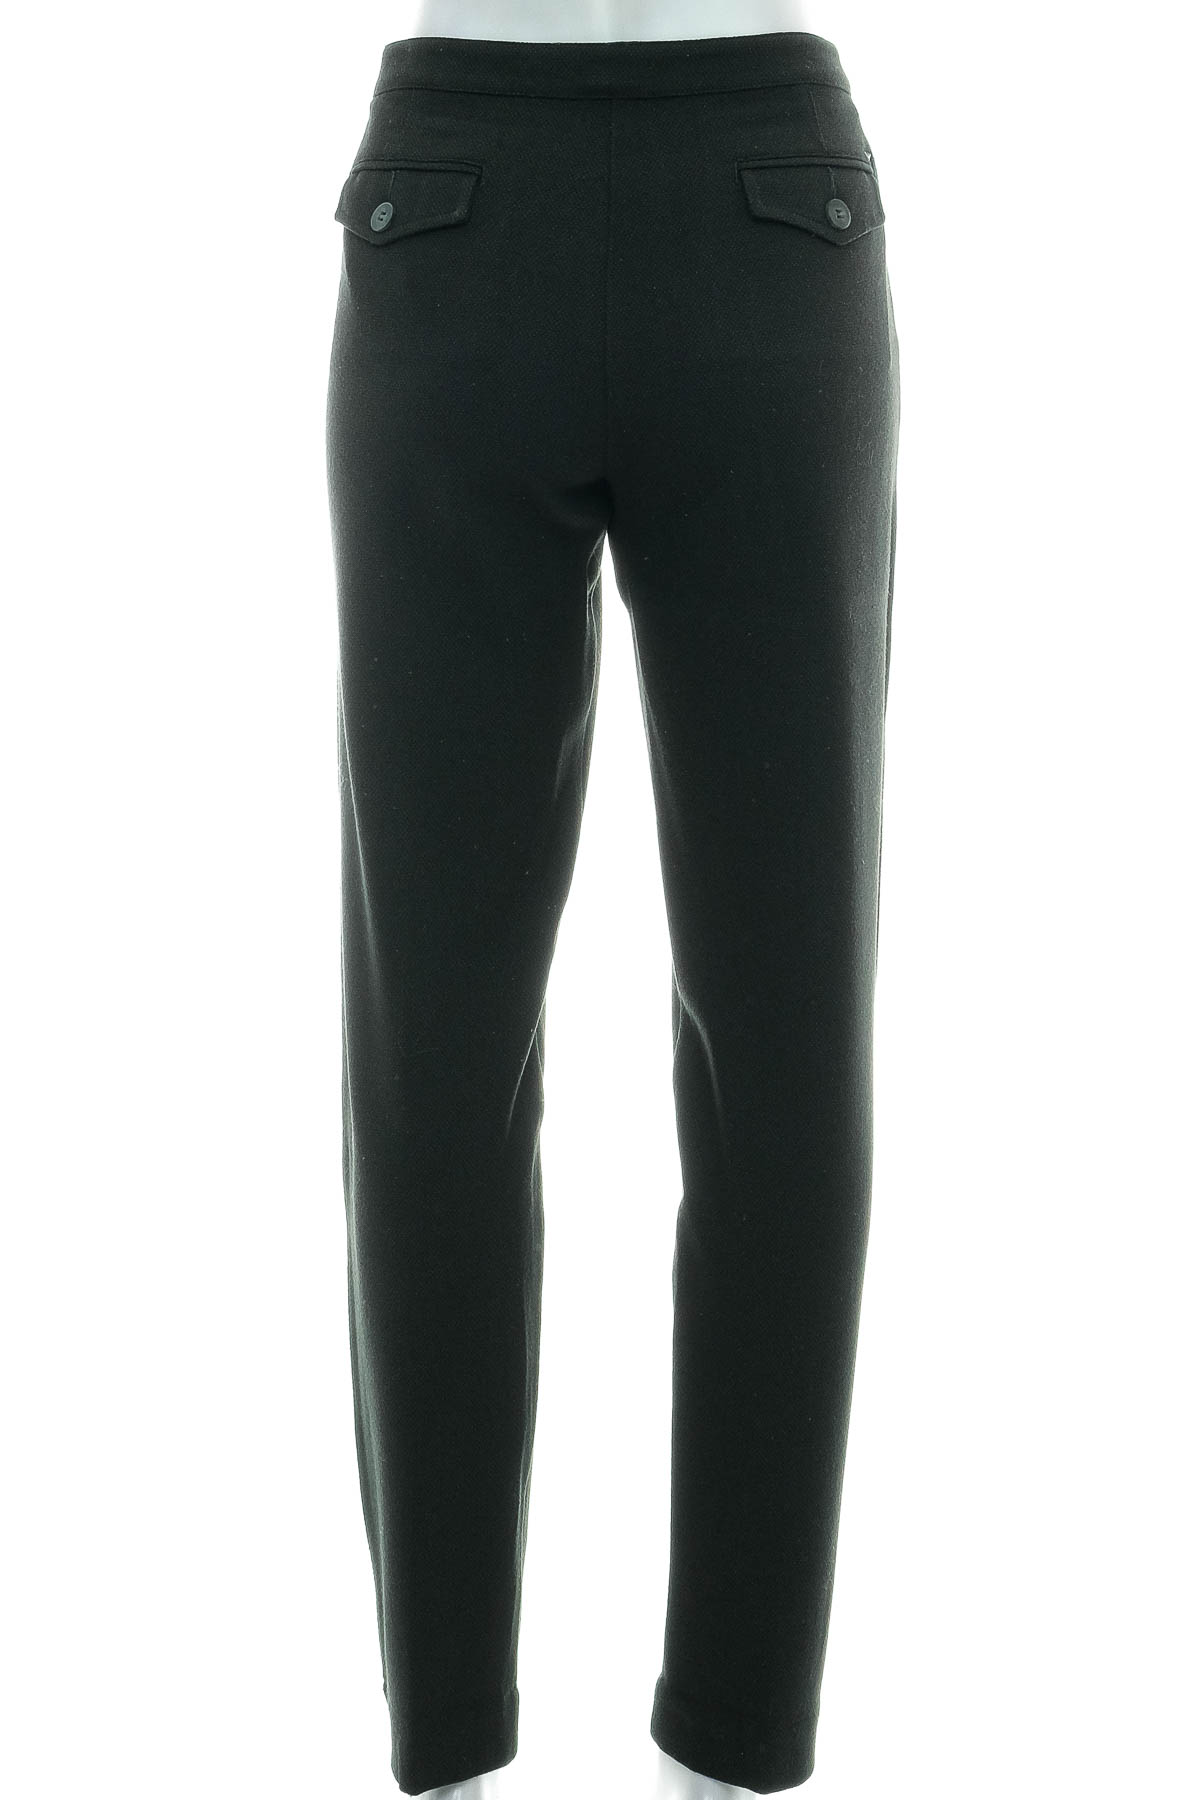 Pantaloni de damă - Armani Jeans - 1